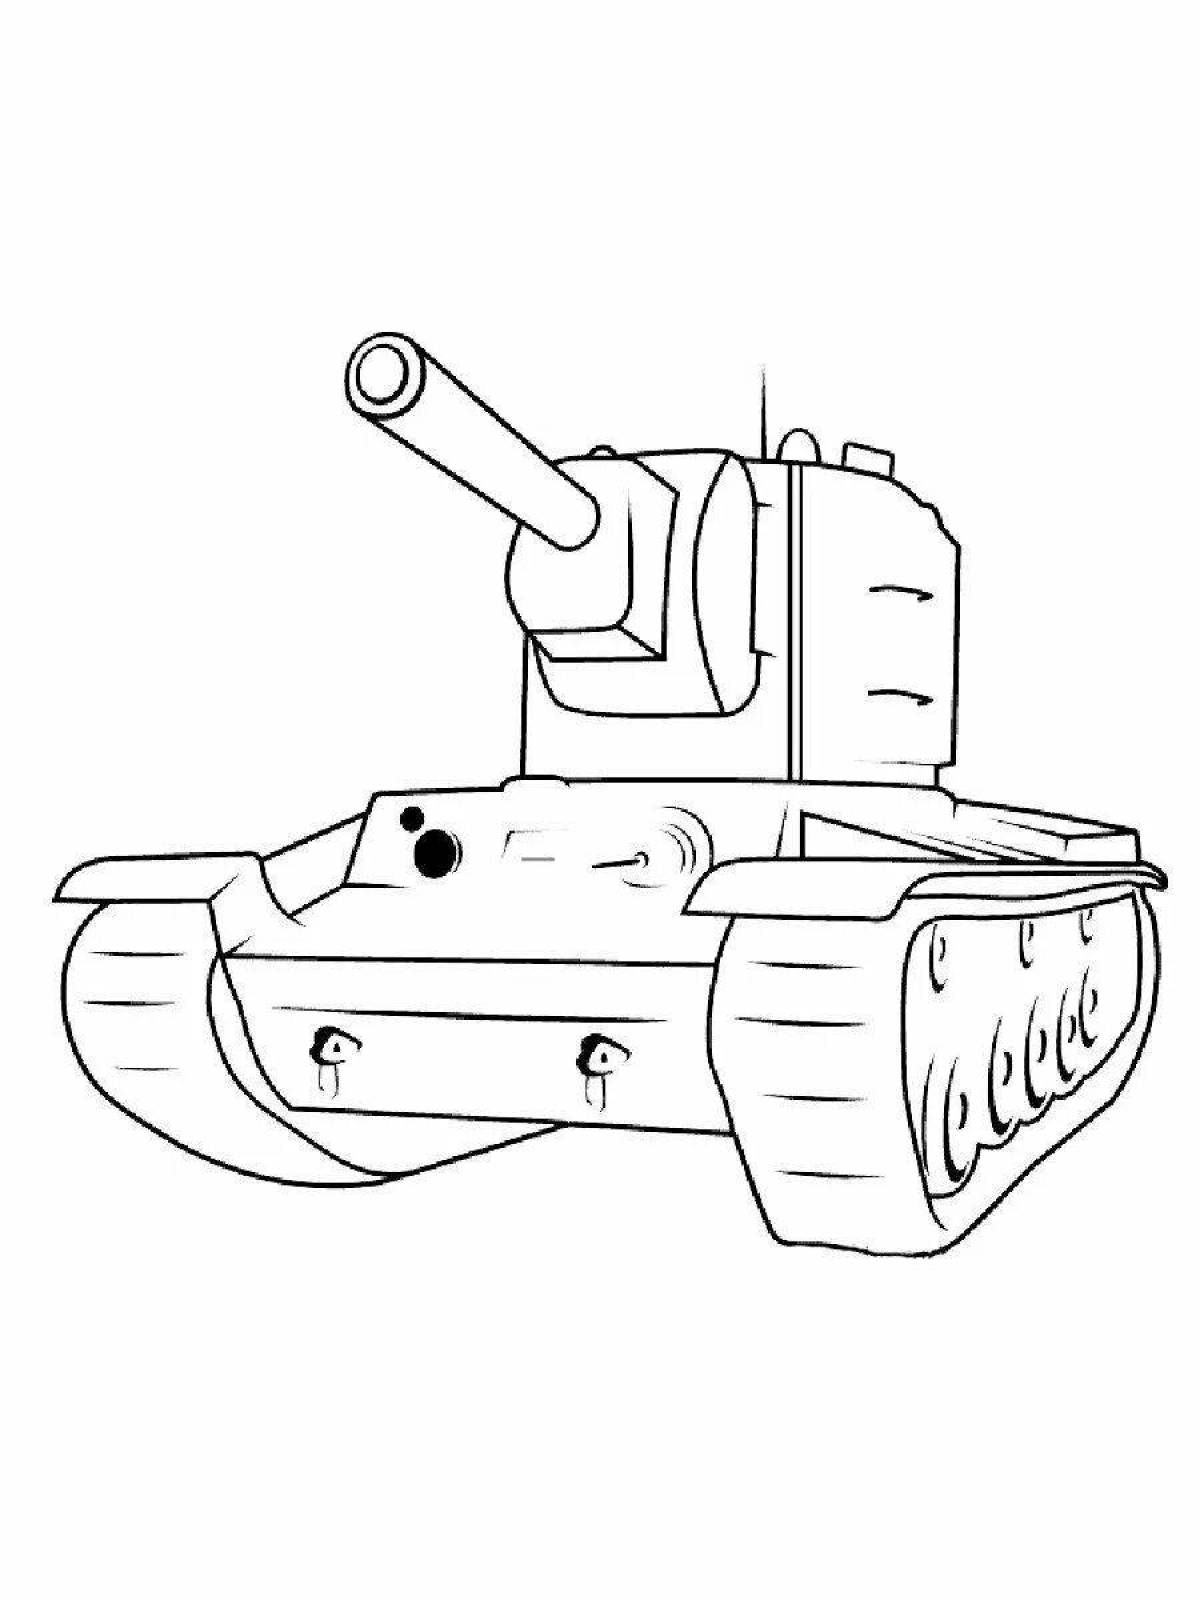 Увлекательная раскраска танка кв44